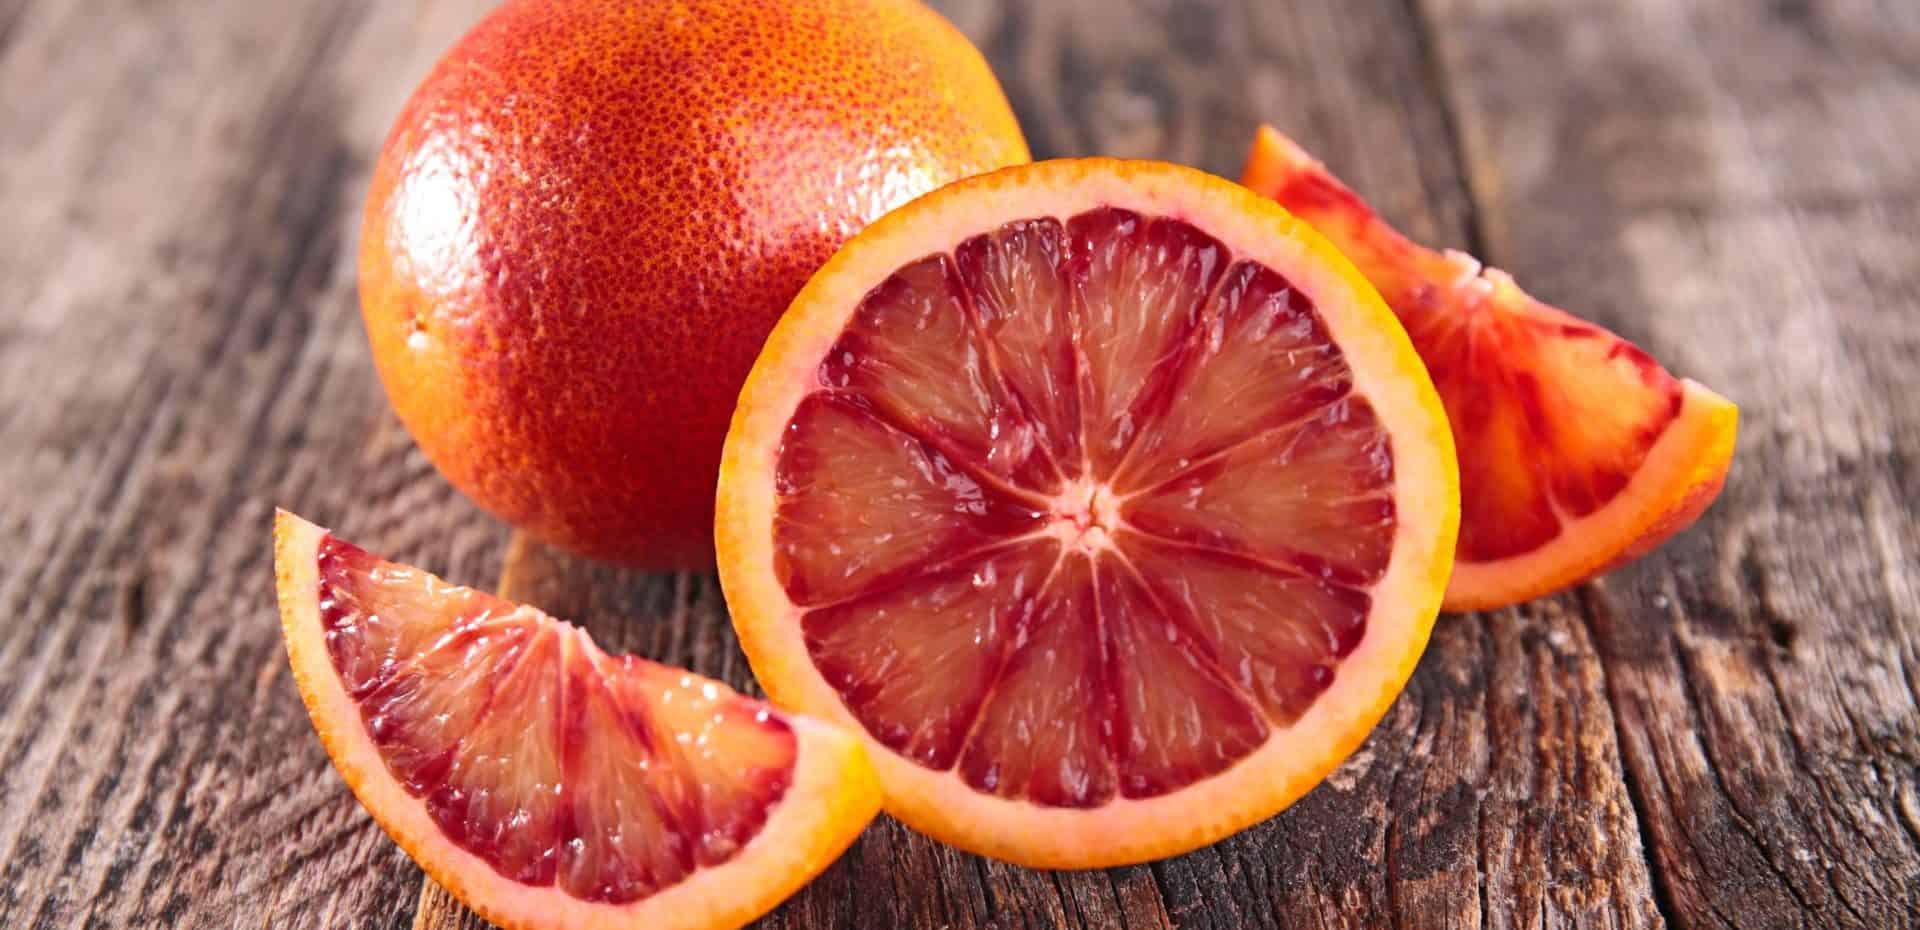 پرتقال موثر در حفظ سلامت دهان و دندان